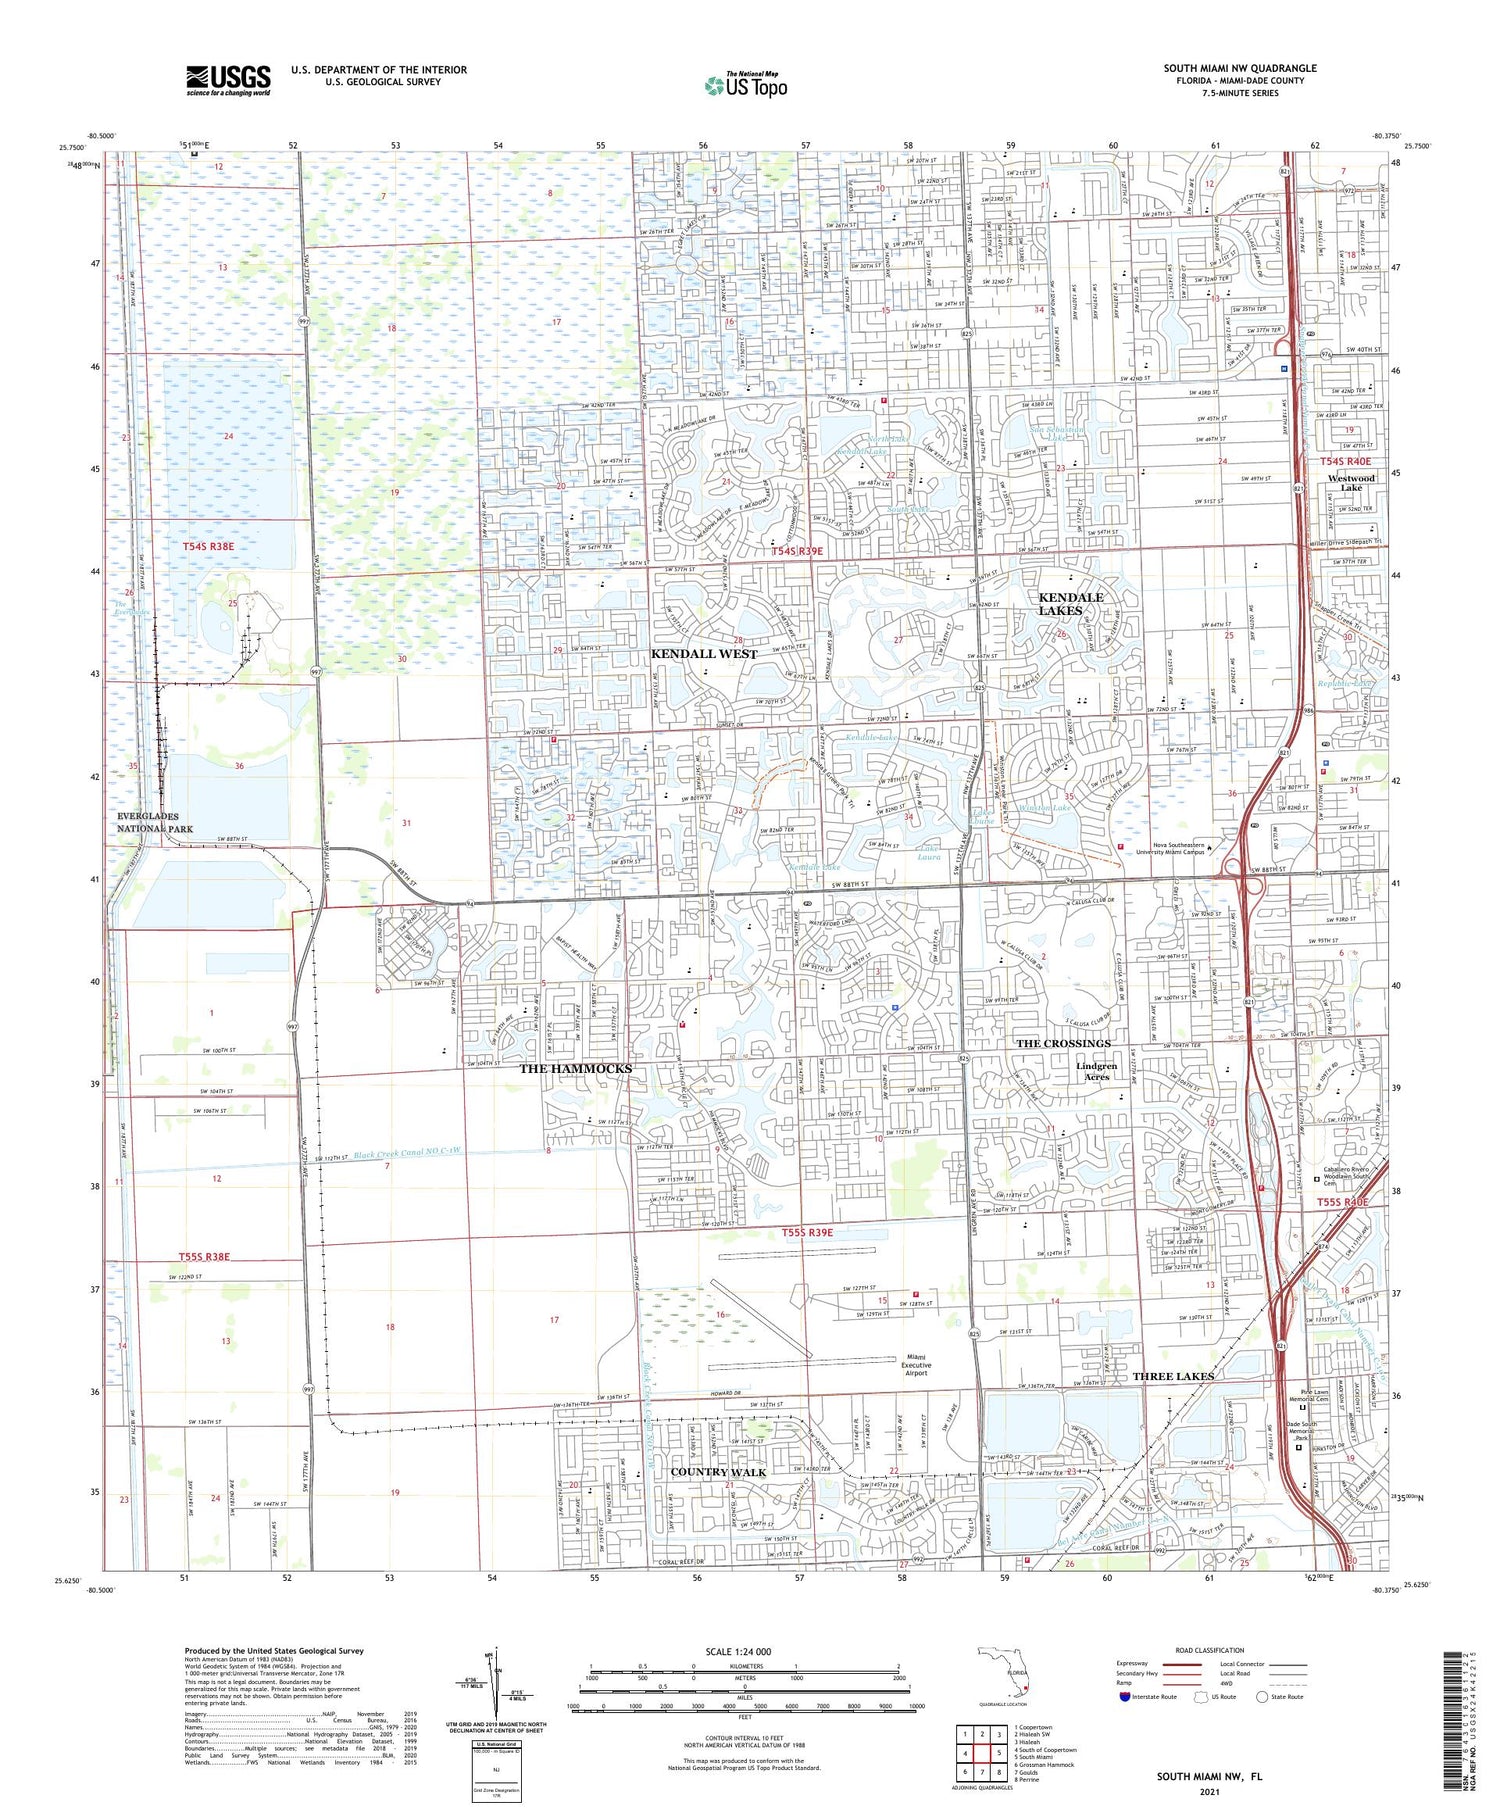 South Miami NW Florida US Topo Map Image